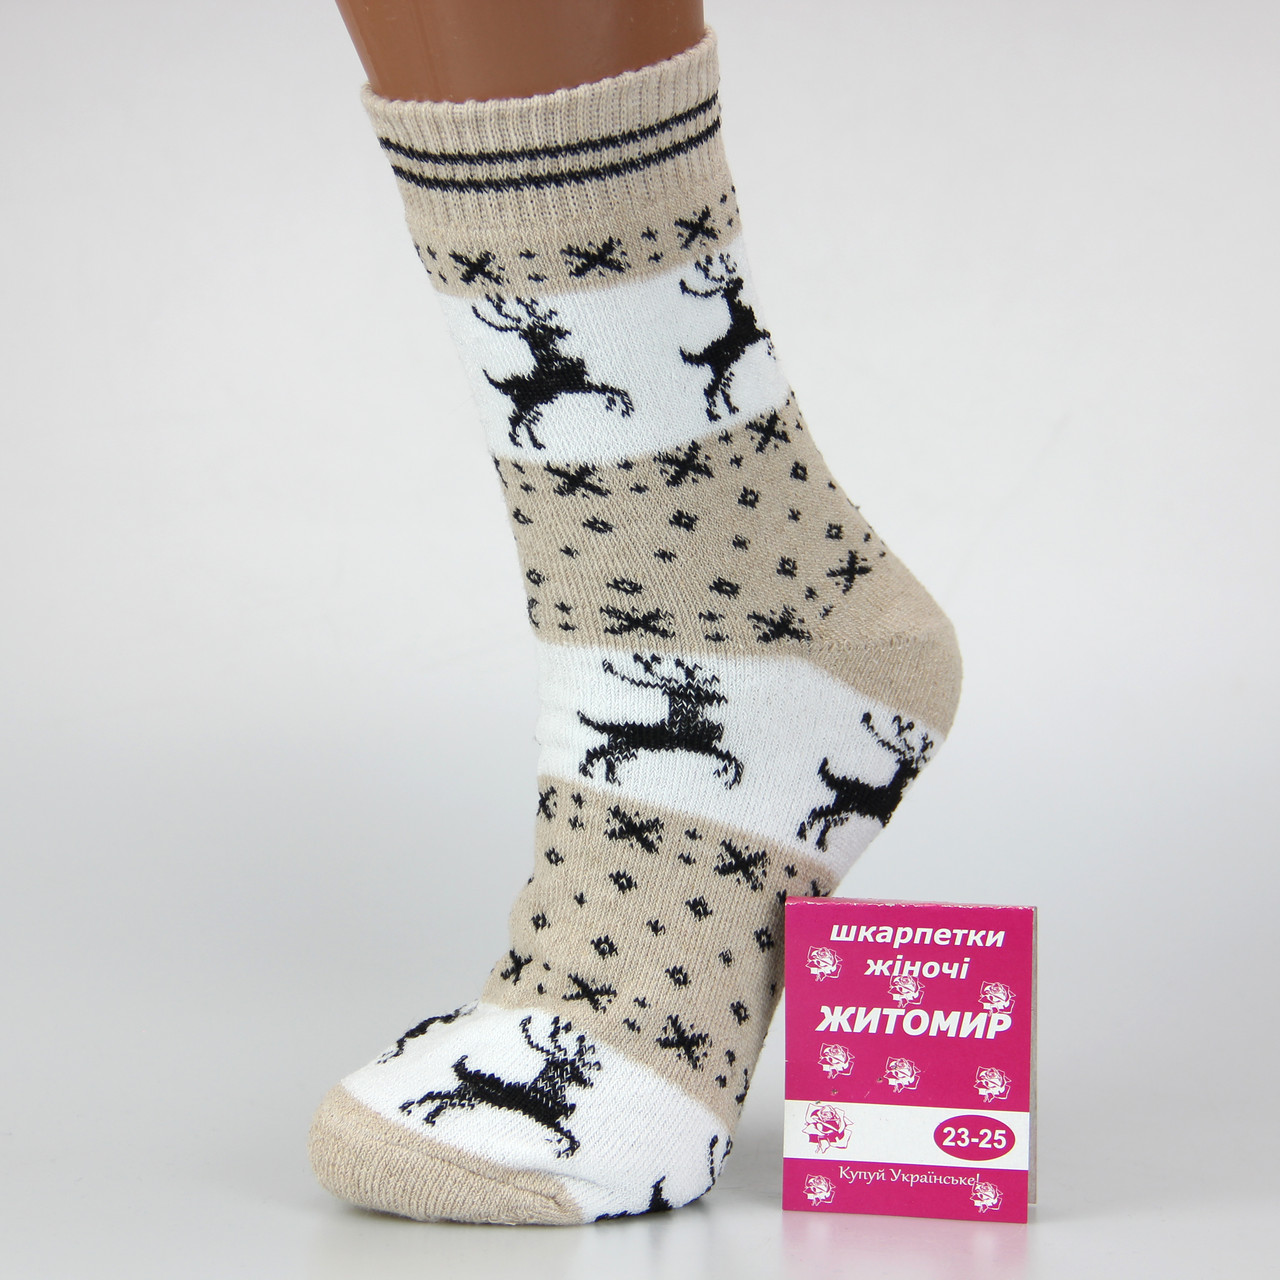 Шкарпетки жіночі махрові з оленями високі 23-25 розмір (36-40 взуття) Житомир зимові бежевий